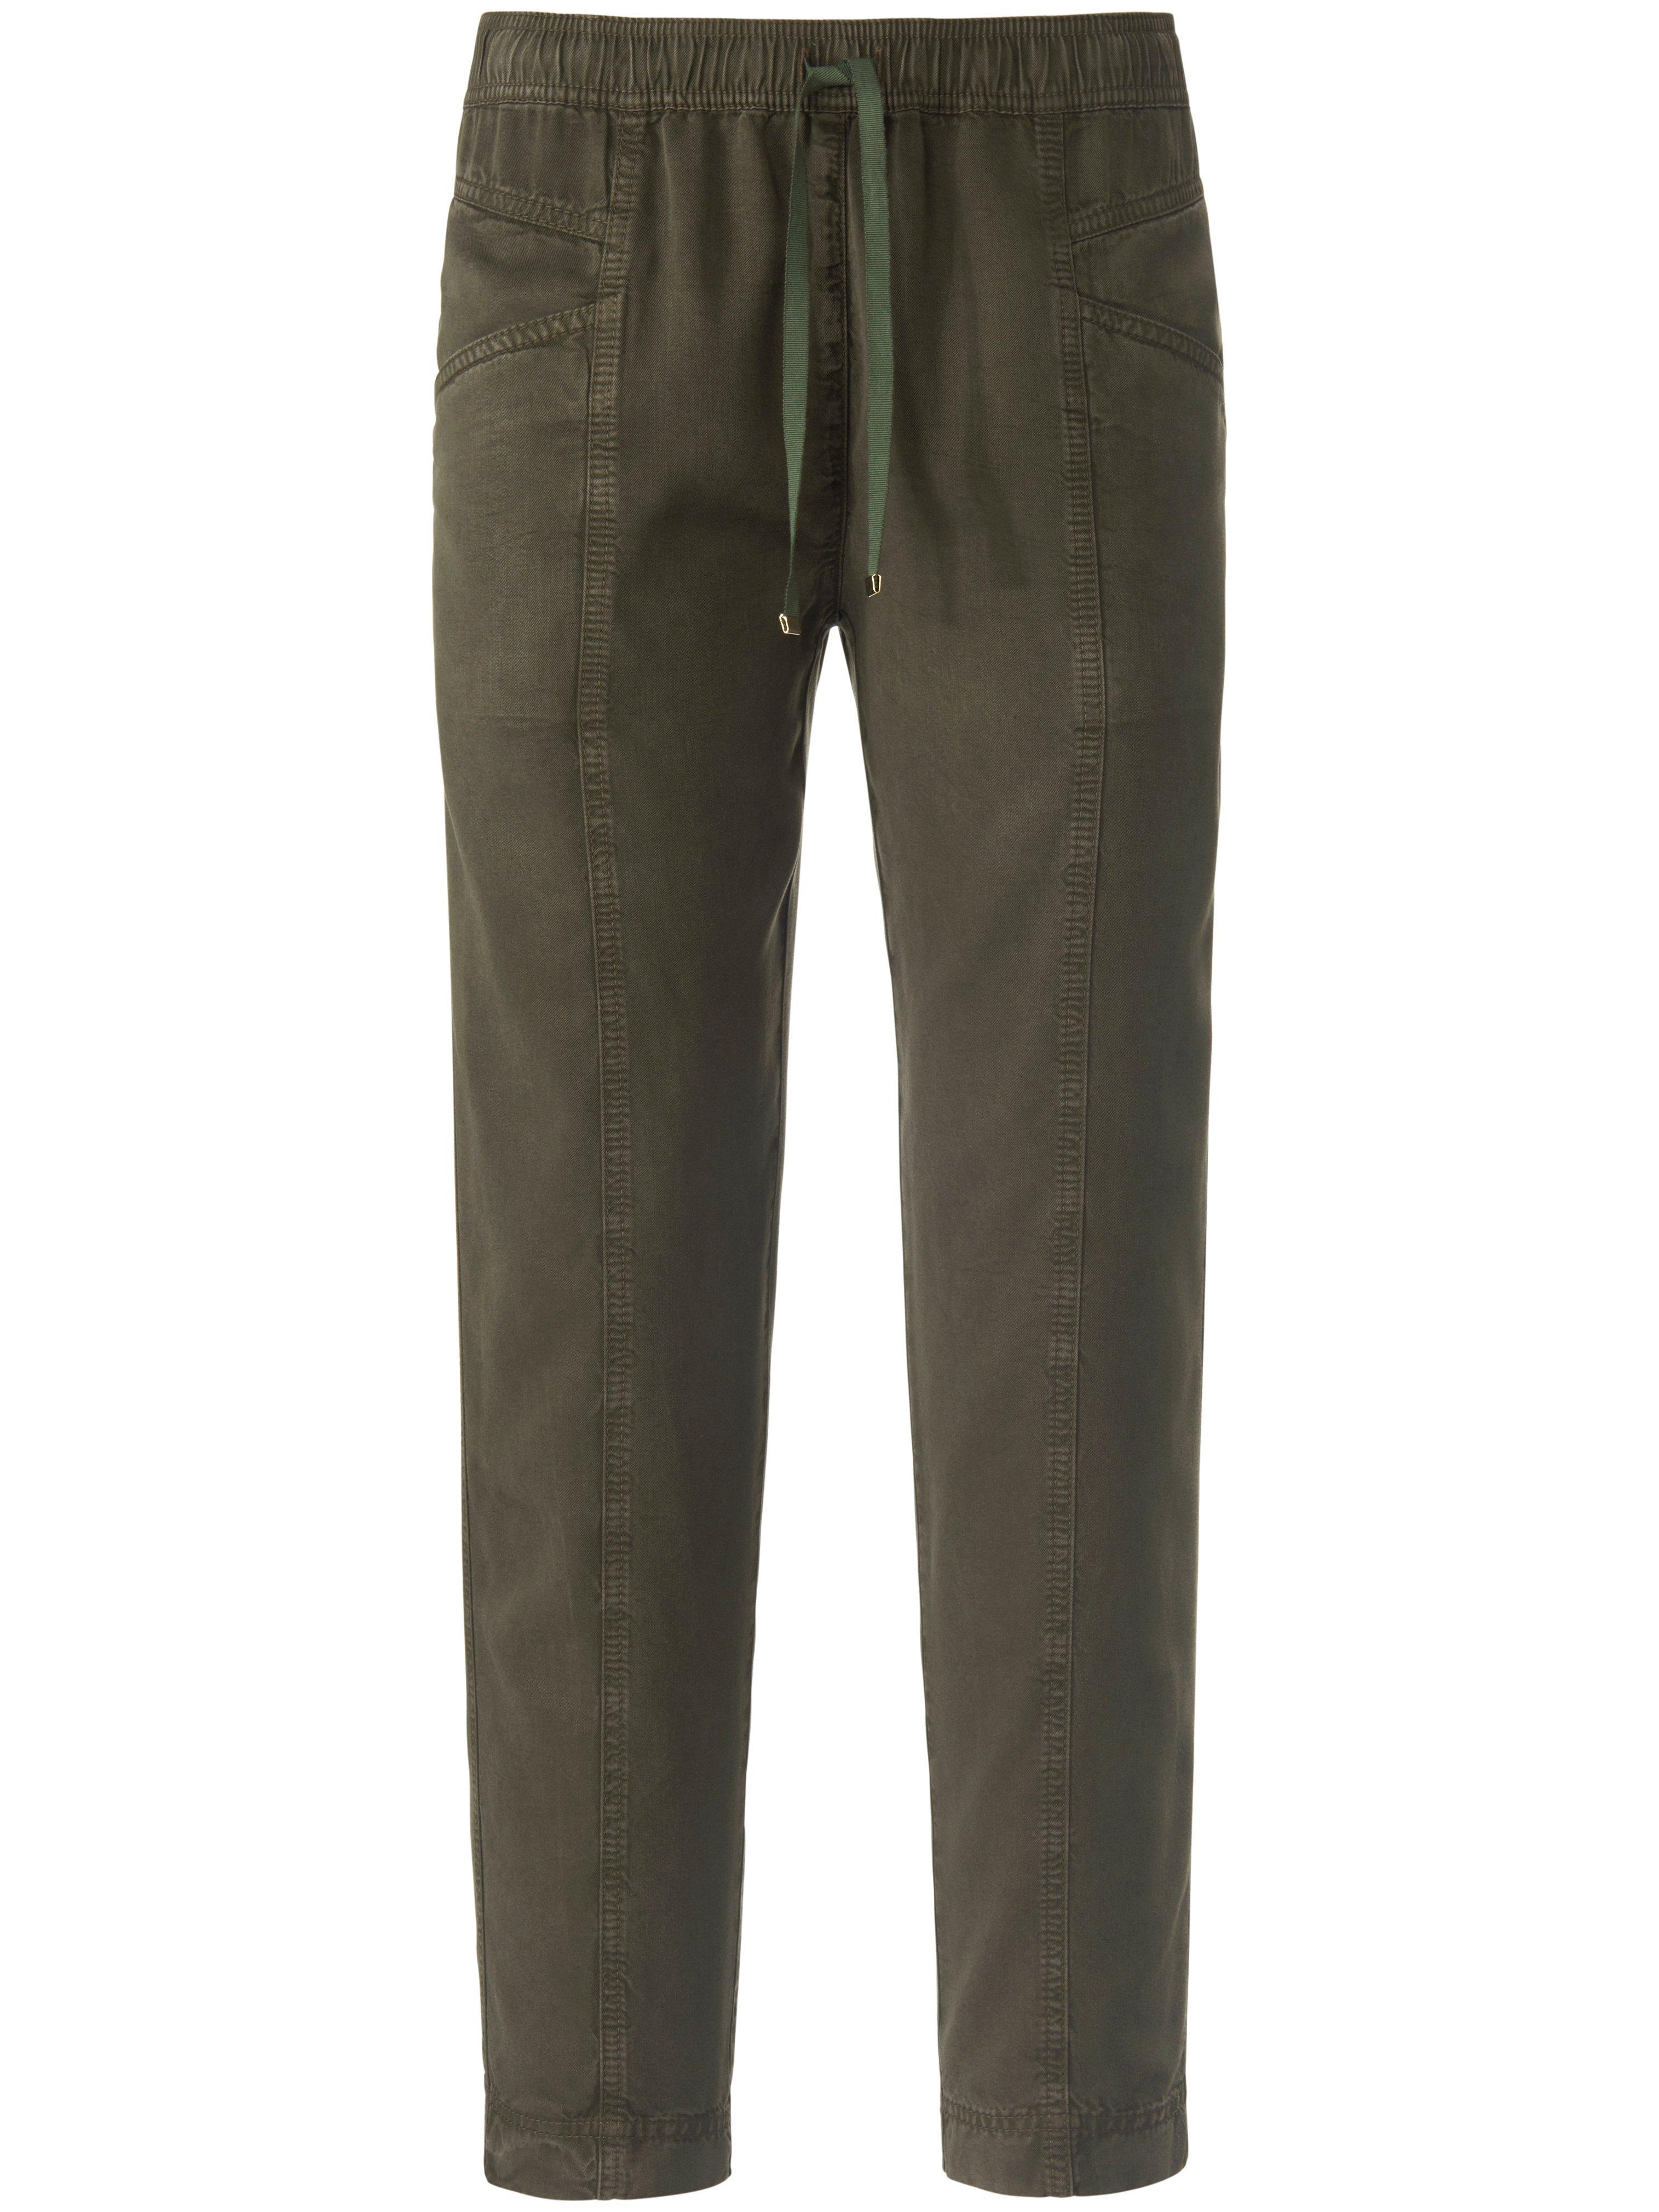 Enkellange broek in jogg-pant-stijl model Cornelia Van Peter Hahn groen